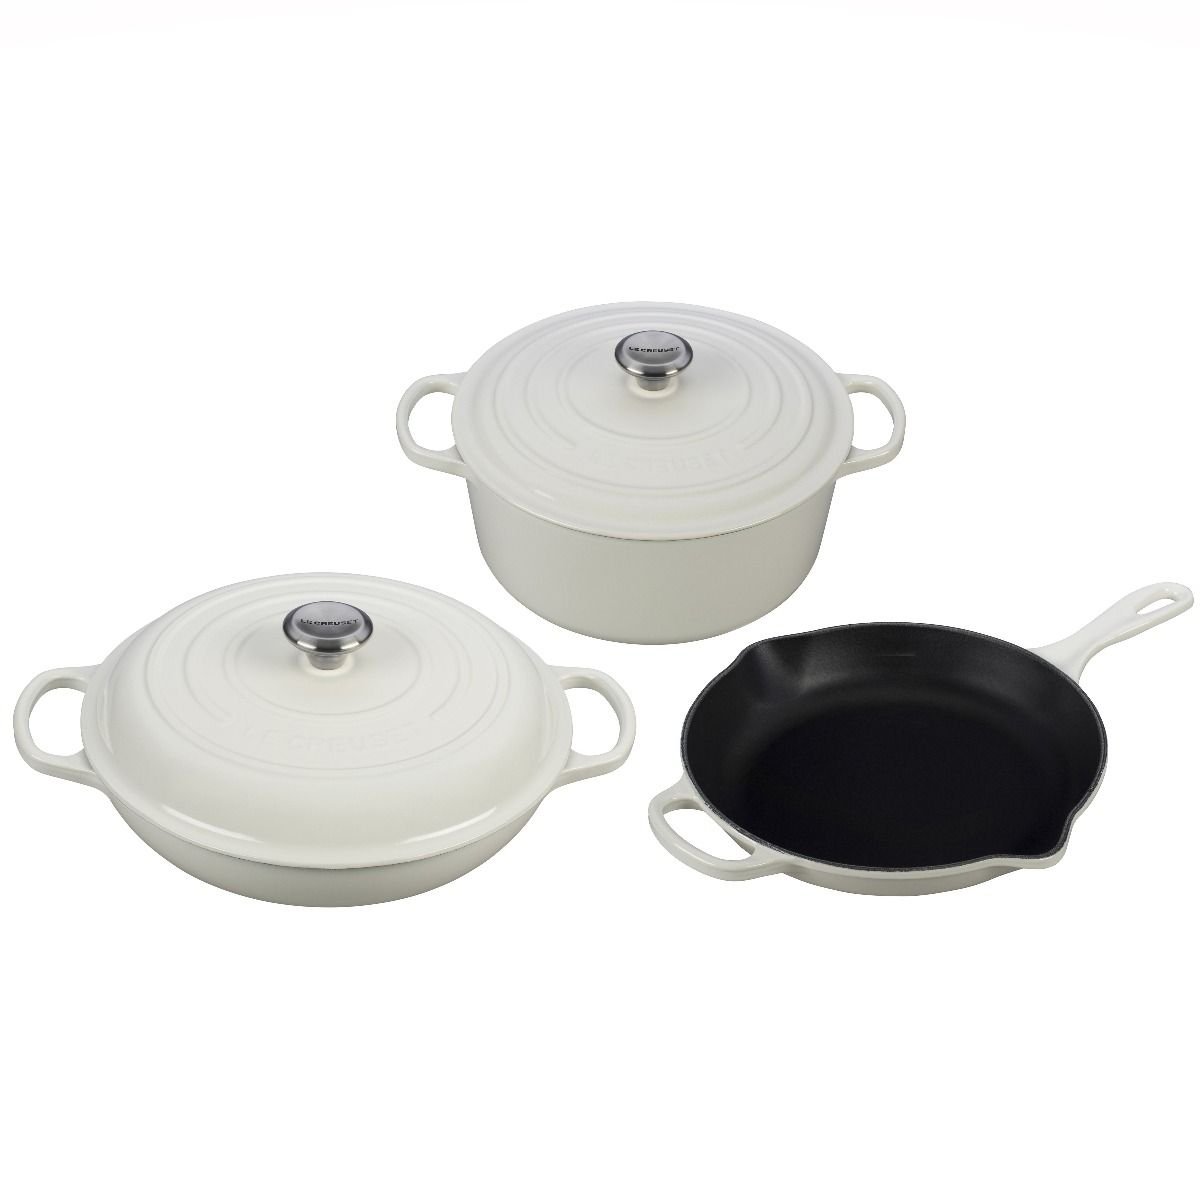  Le Creuset Enameled Cast Iron Signature Cookware Set, 5 pc. ,  Artichaut: Home & Kitchen